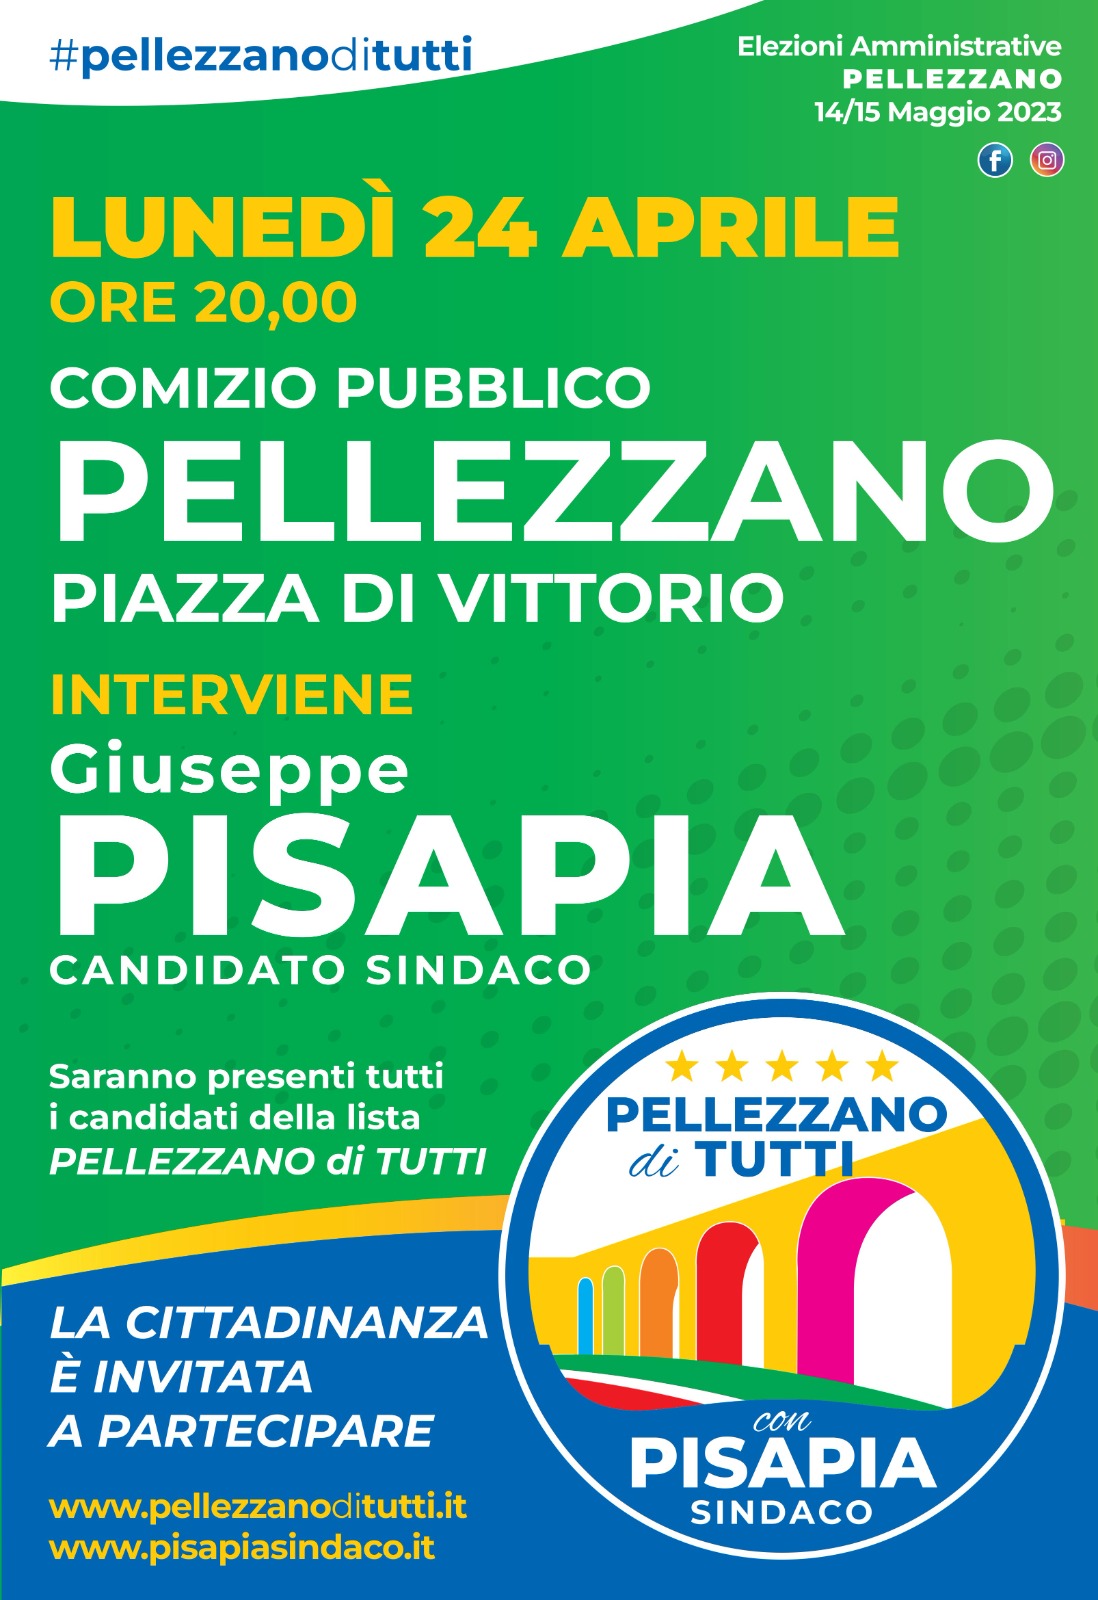 Pellezzano: Amministrative, candidato Sindaco Pisapia, comizio pubblico